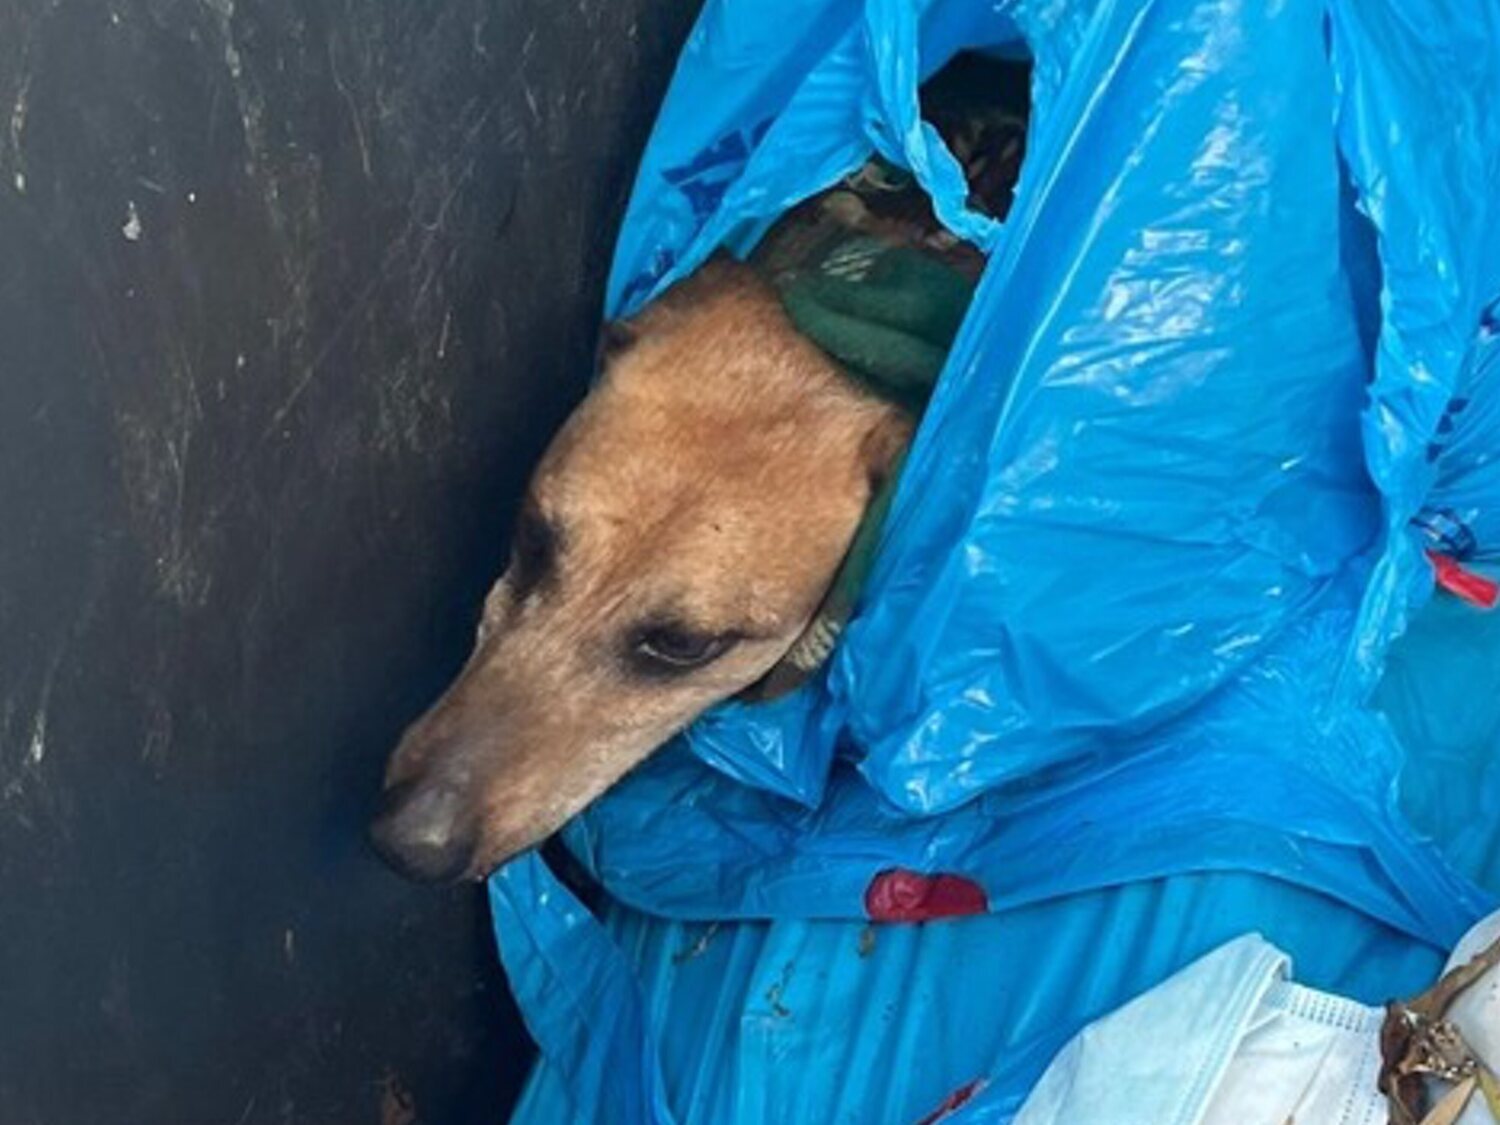 Muere un perro arrojado a la basura con heridas: un vecino alertó al escuchar su llanto